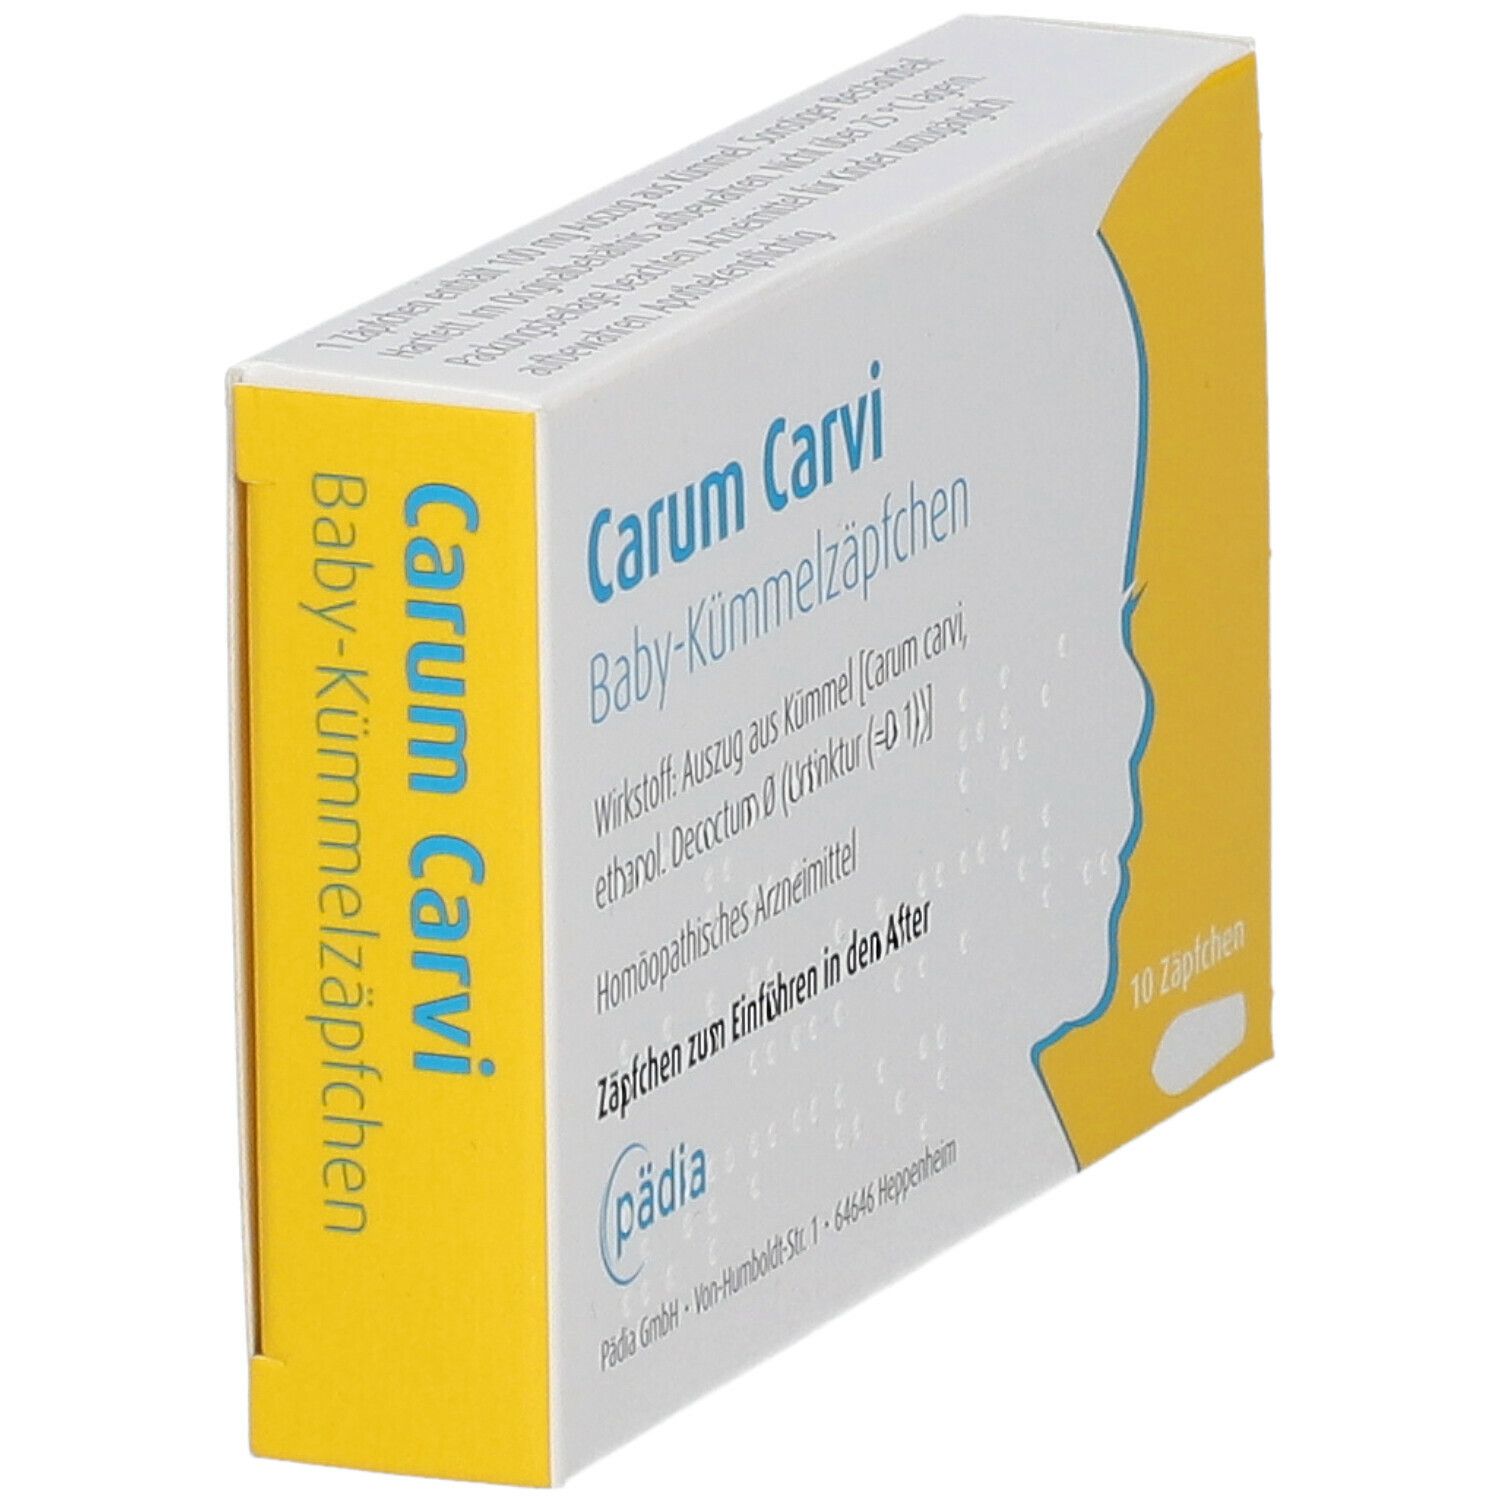 Carum Carvi® Baby-Kümmelzäpfchen